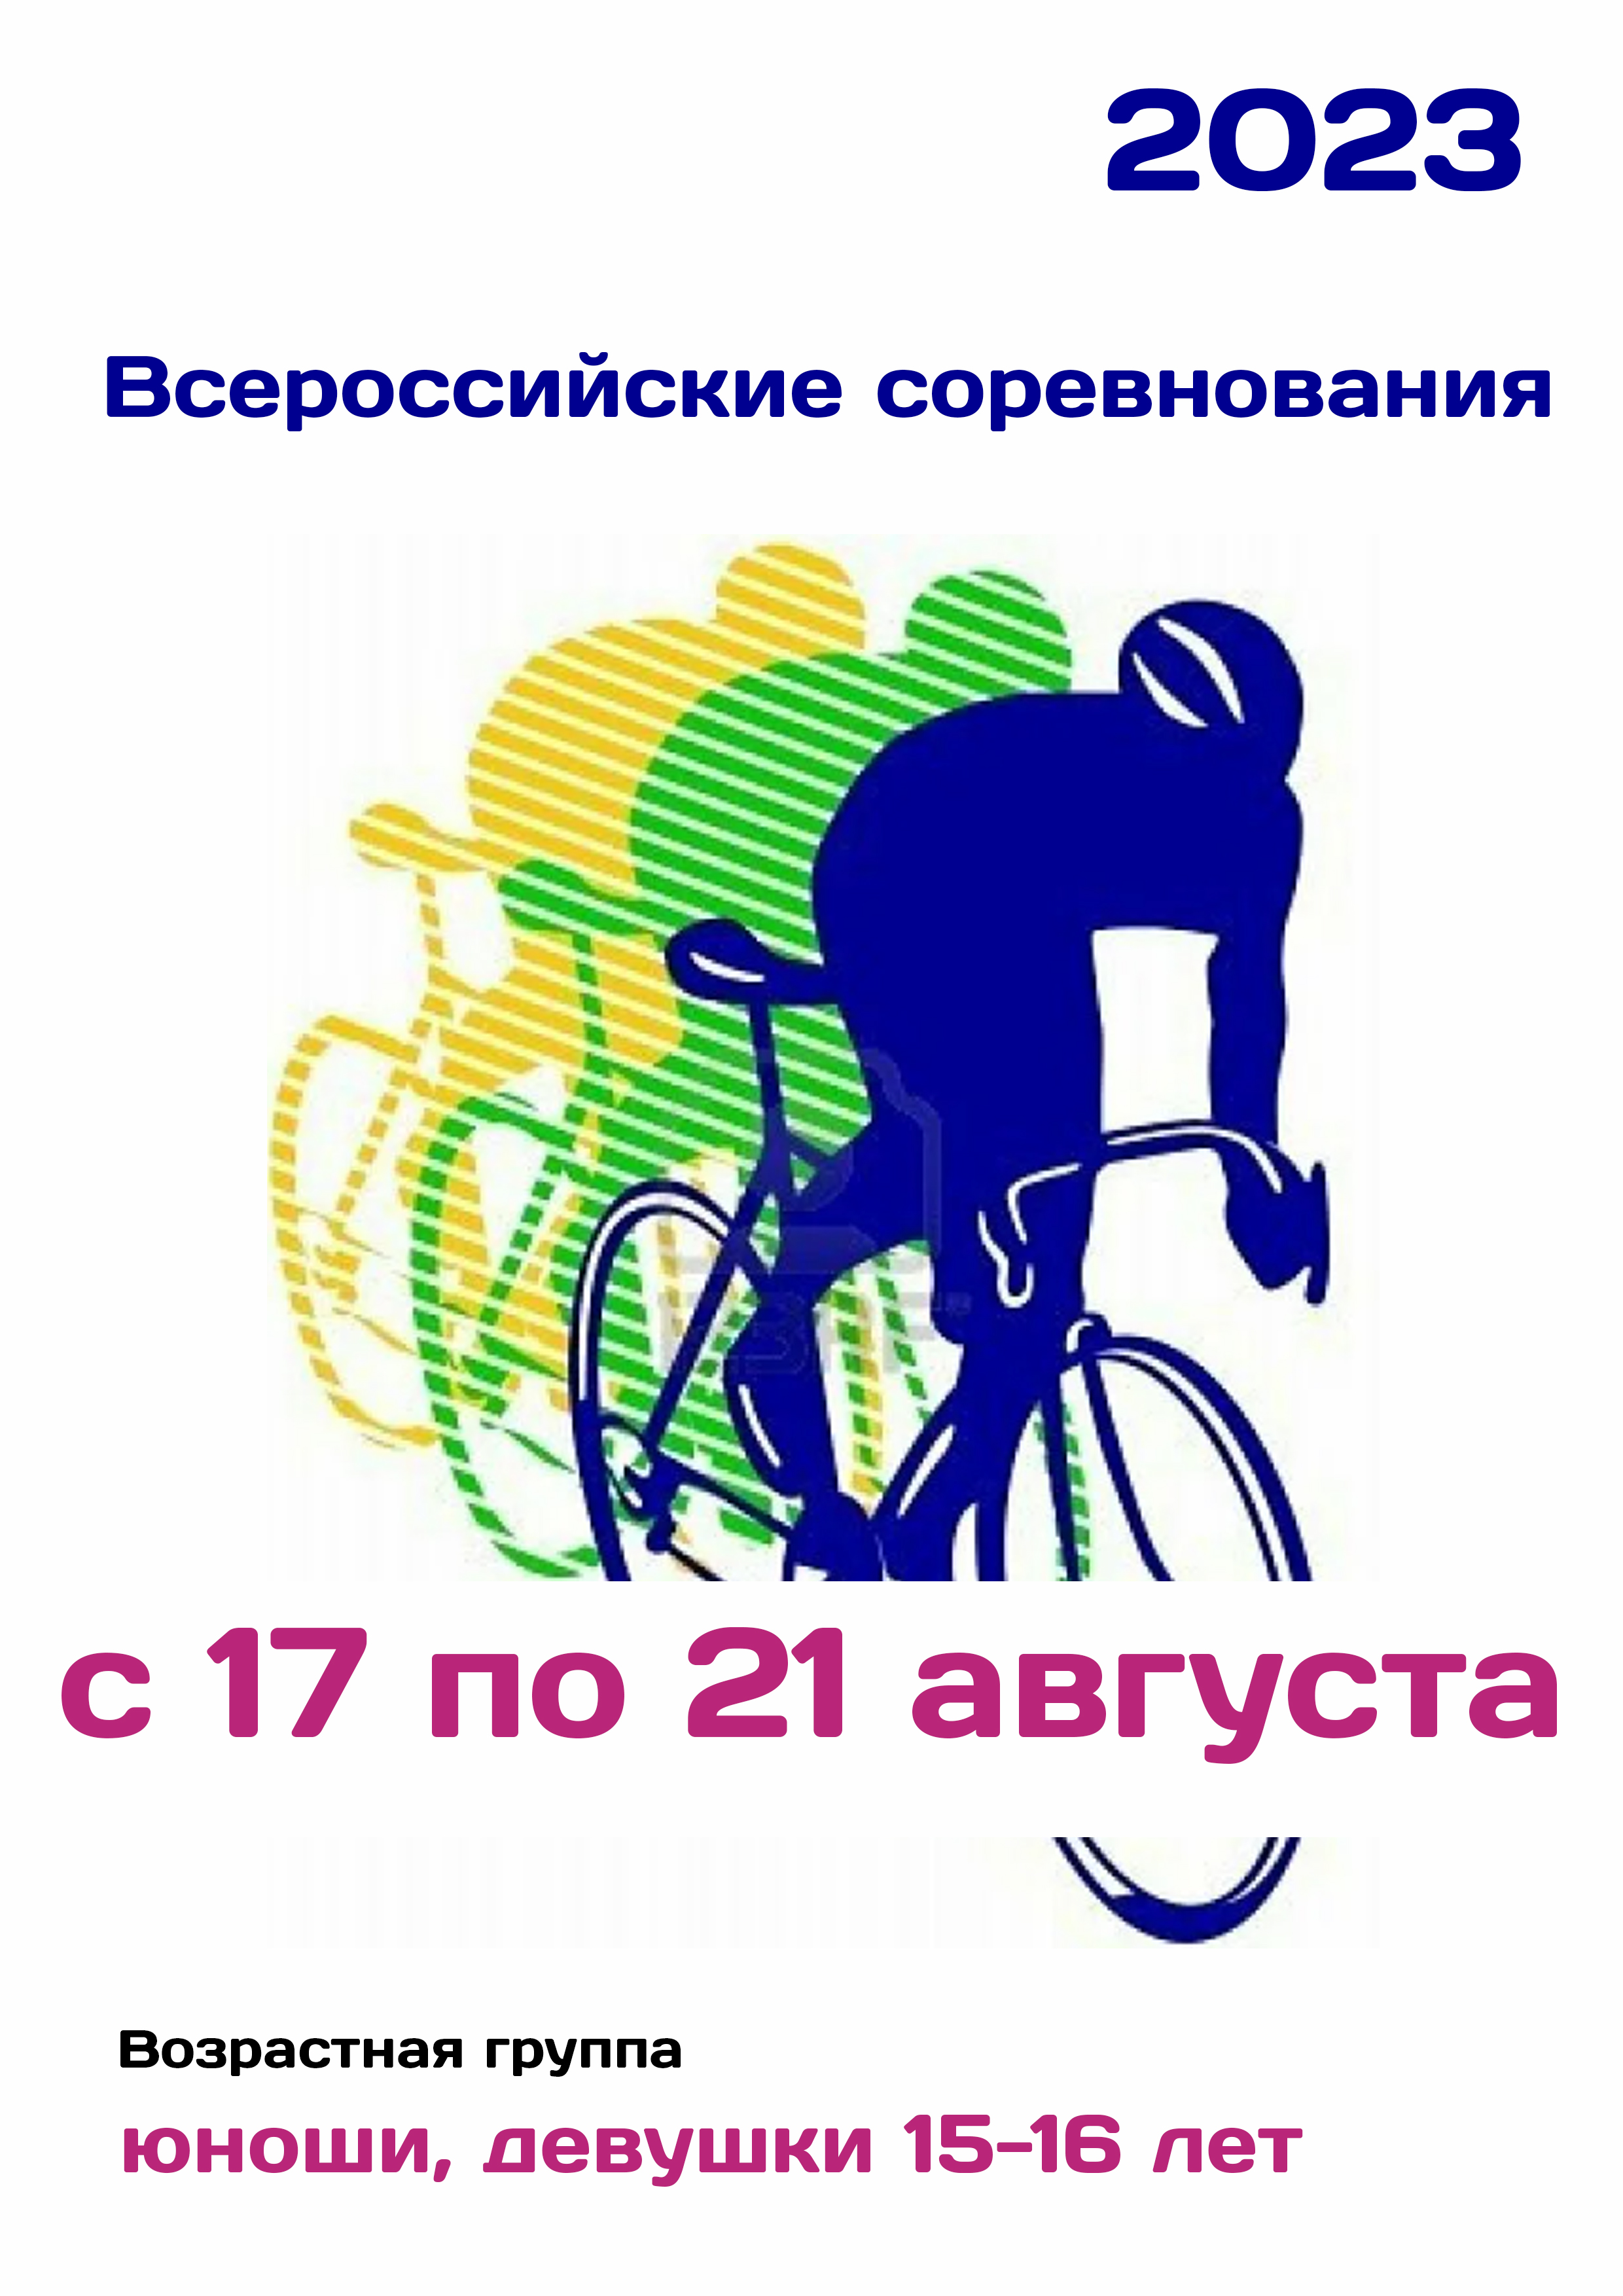 Всероссийские соревнования по велоспорту 17  august
 2023  rok
 